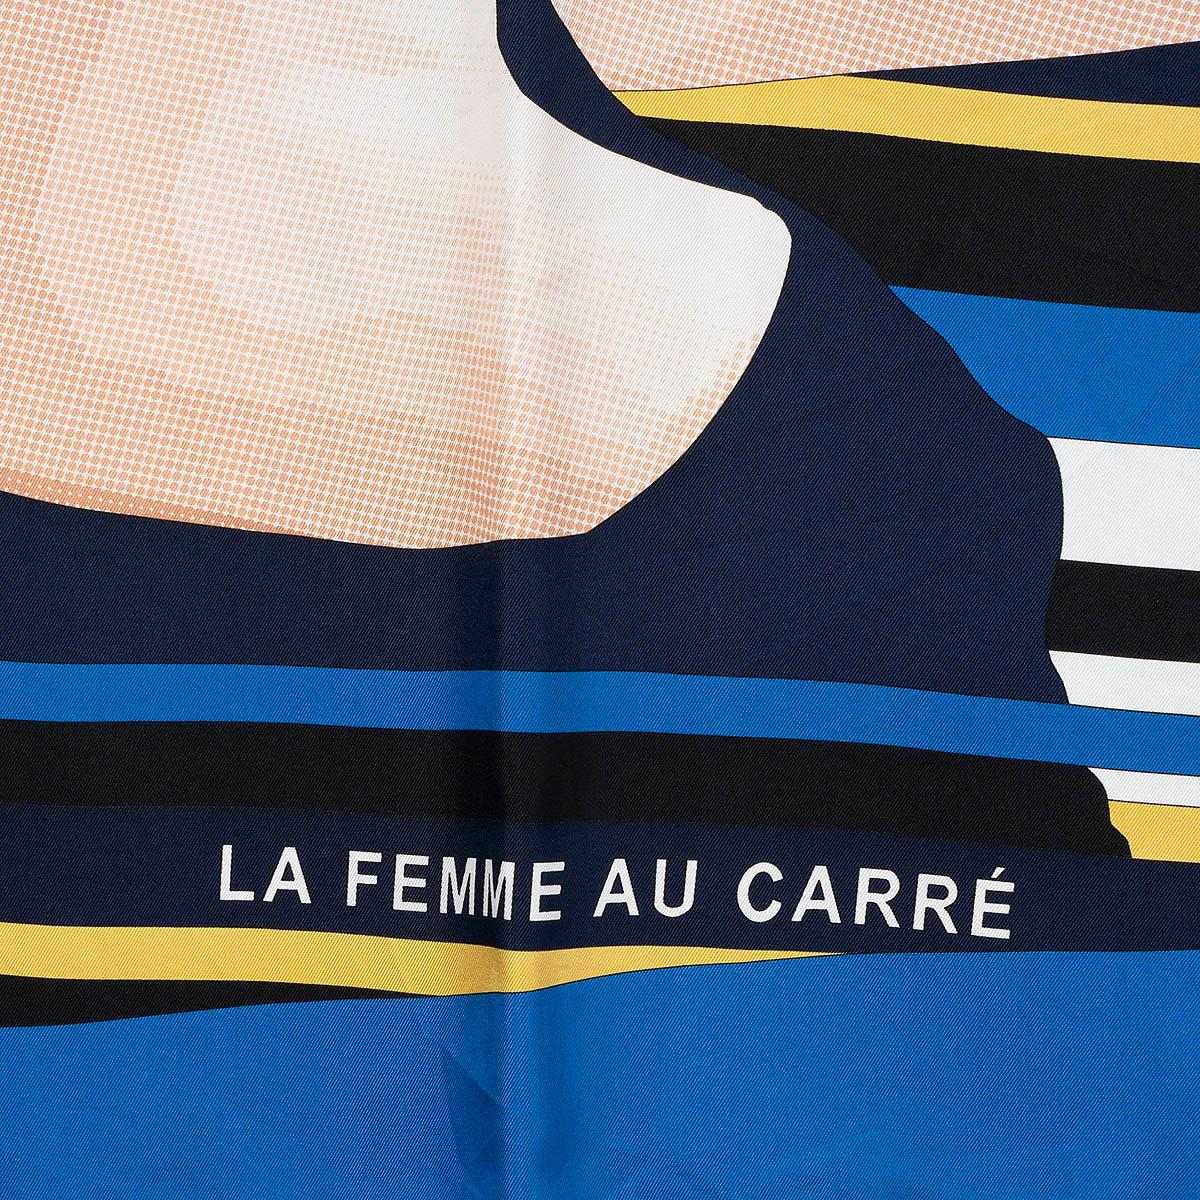 100% authentischer Hermès 90 Schal La Femme Au Carré aus blauer und marineblauer Seide (100%) mit Details in Schwarz, Grau, Weiß, Nude, Ocker und Magenta. Wurde getragen und ist in ausgezeichnetem Zustand. 

Messungen
Breite	90cm (35.1in)
Länge	90cm